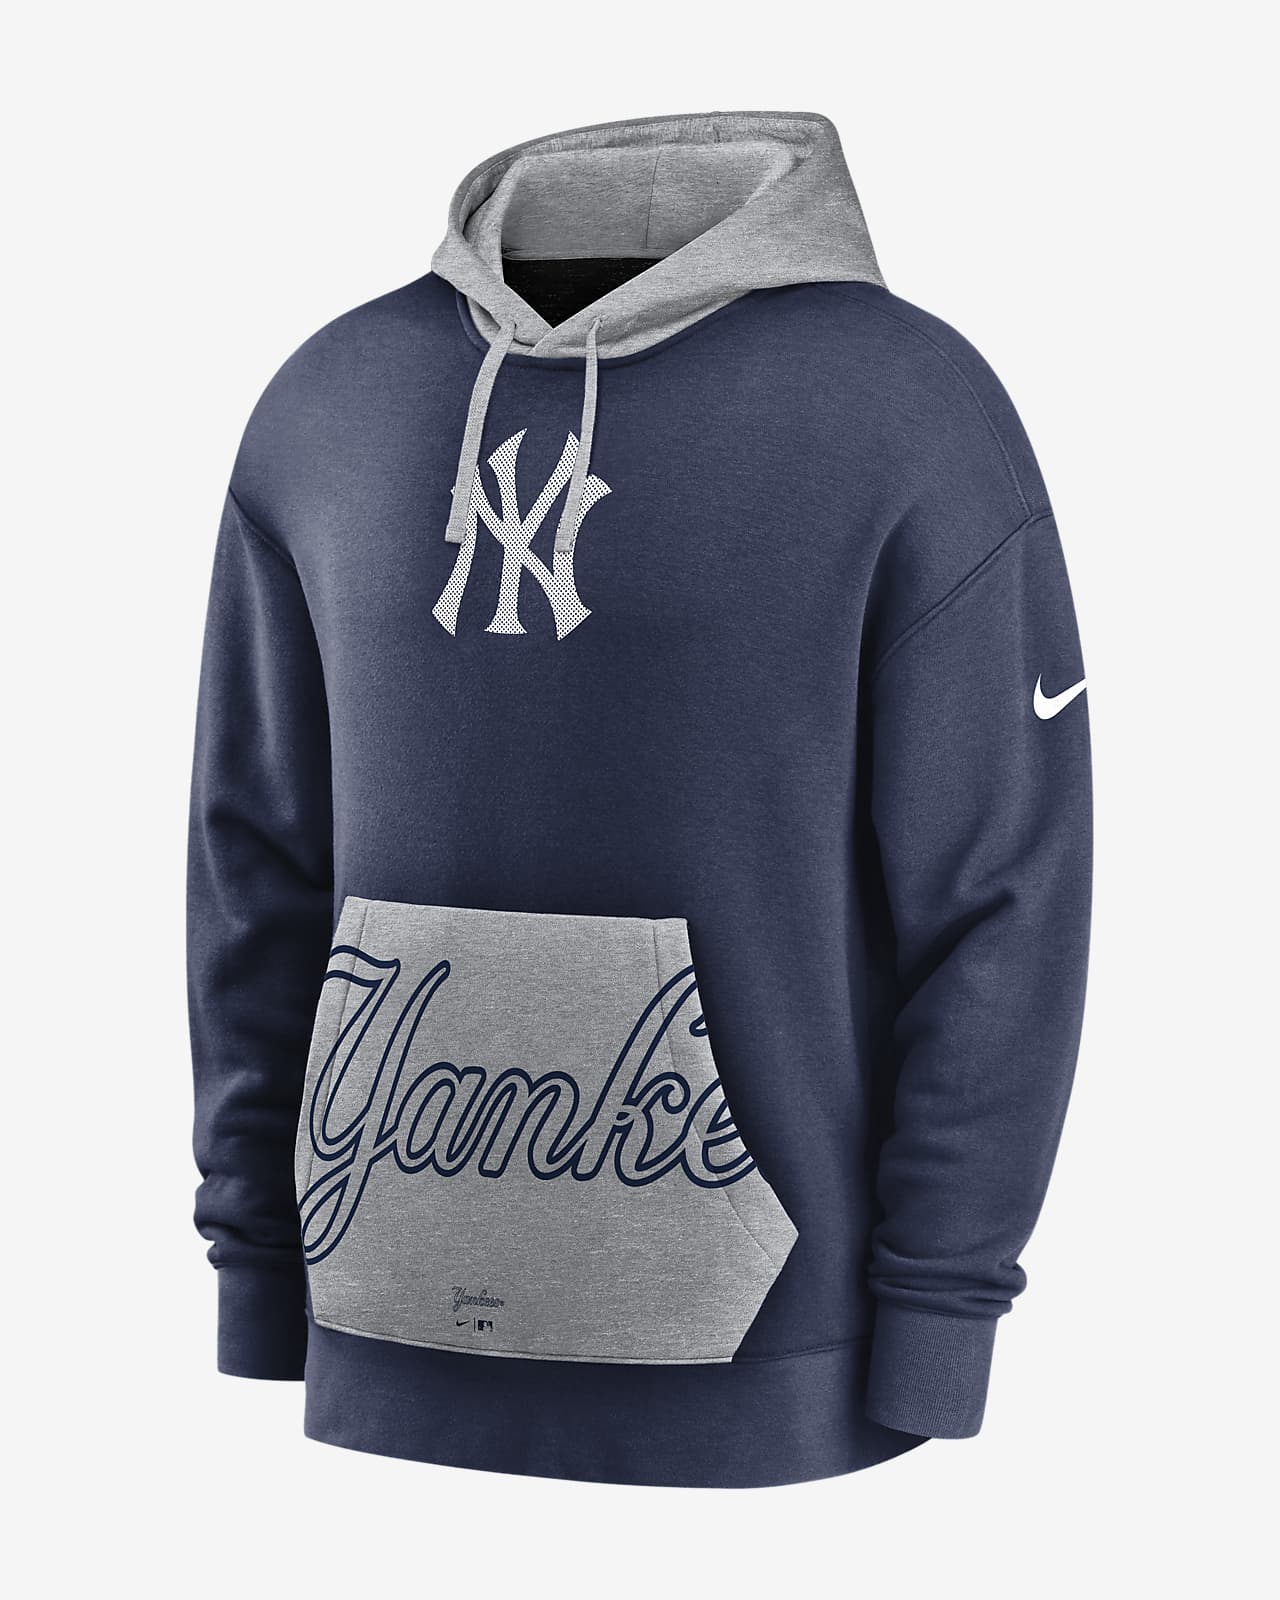 new york yankees hoodie nike